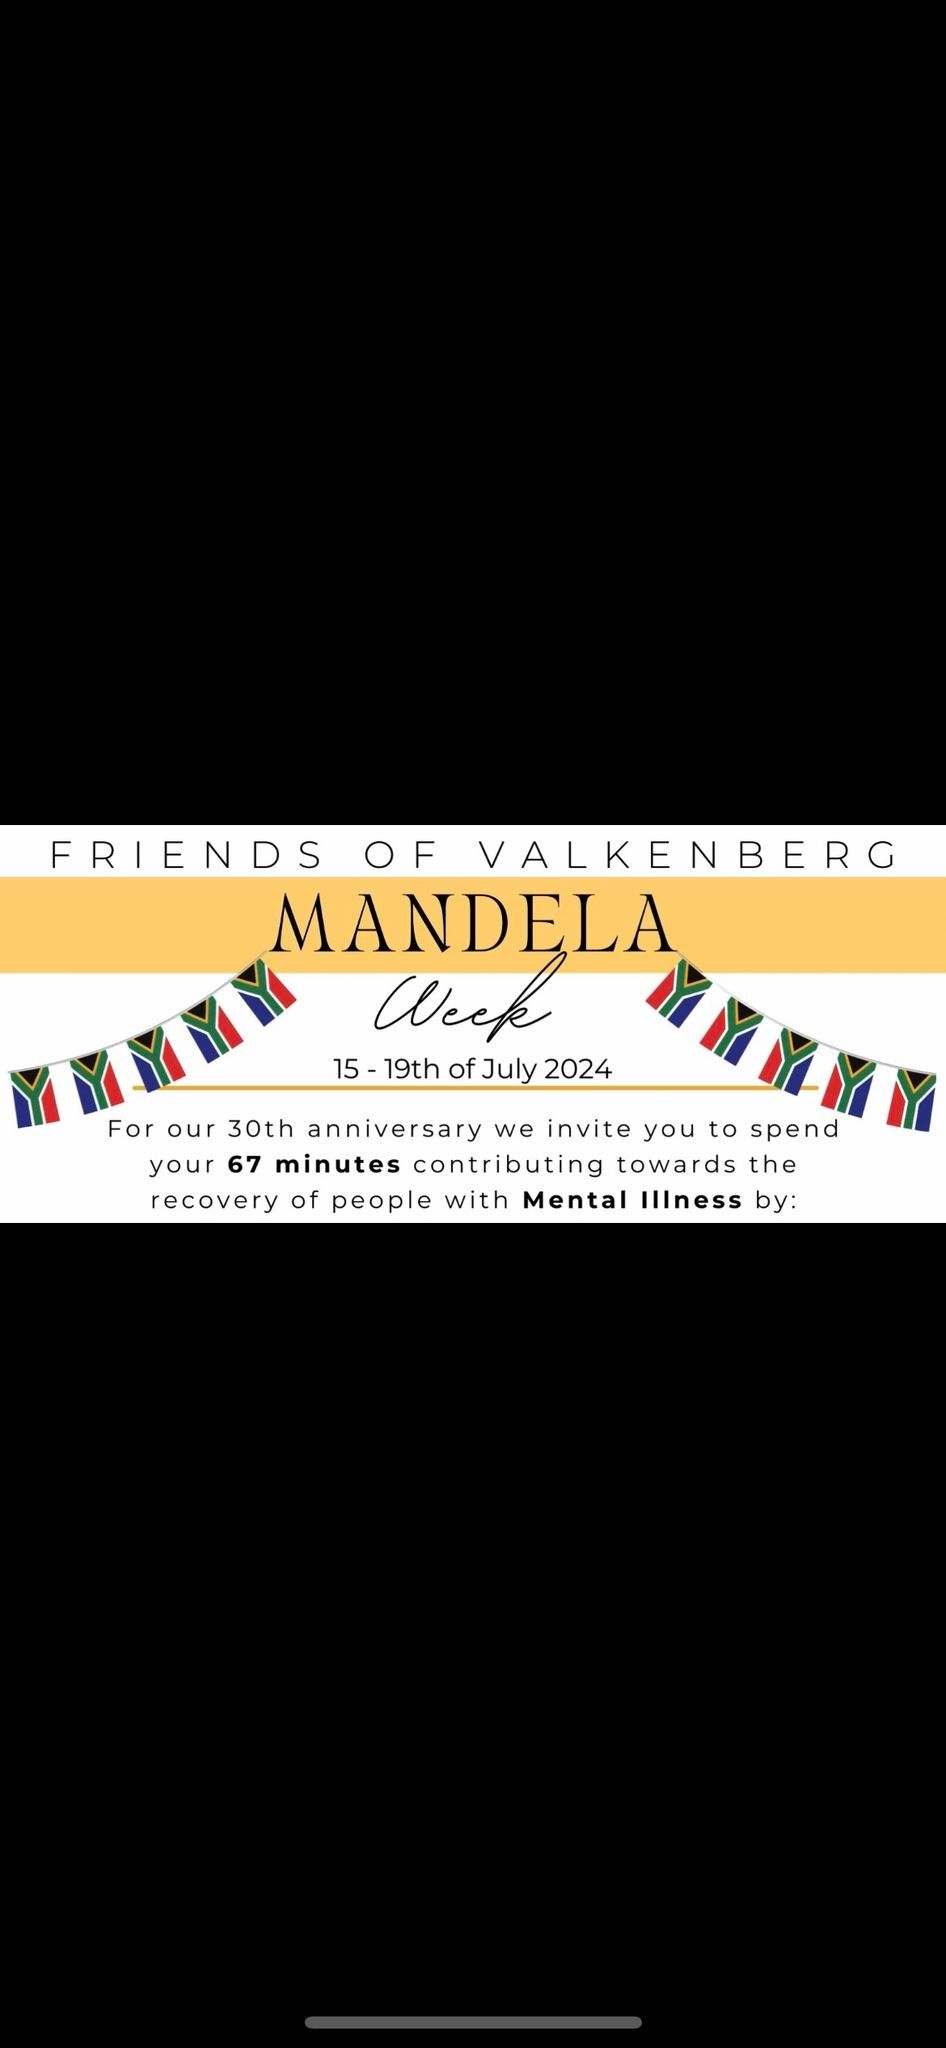 Mandela Week